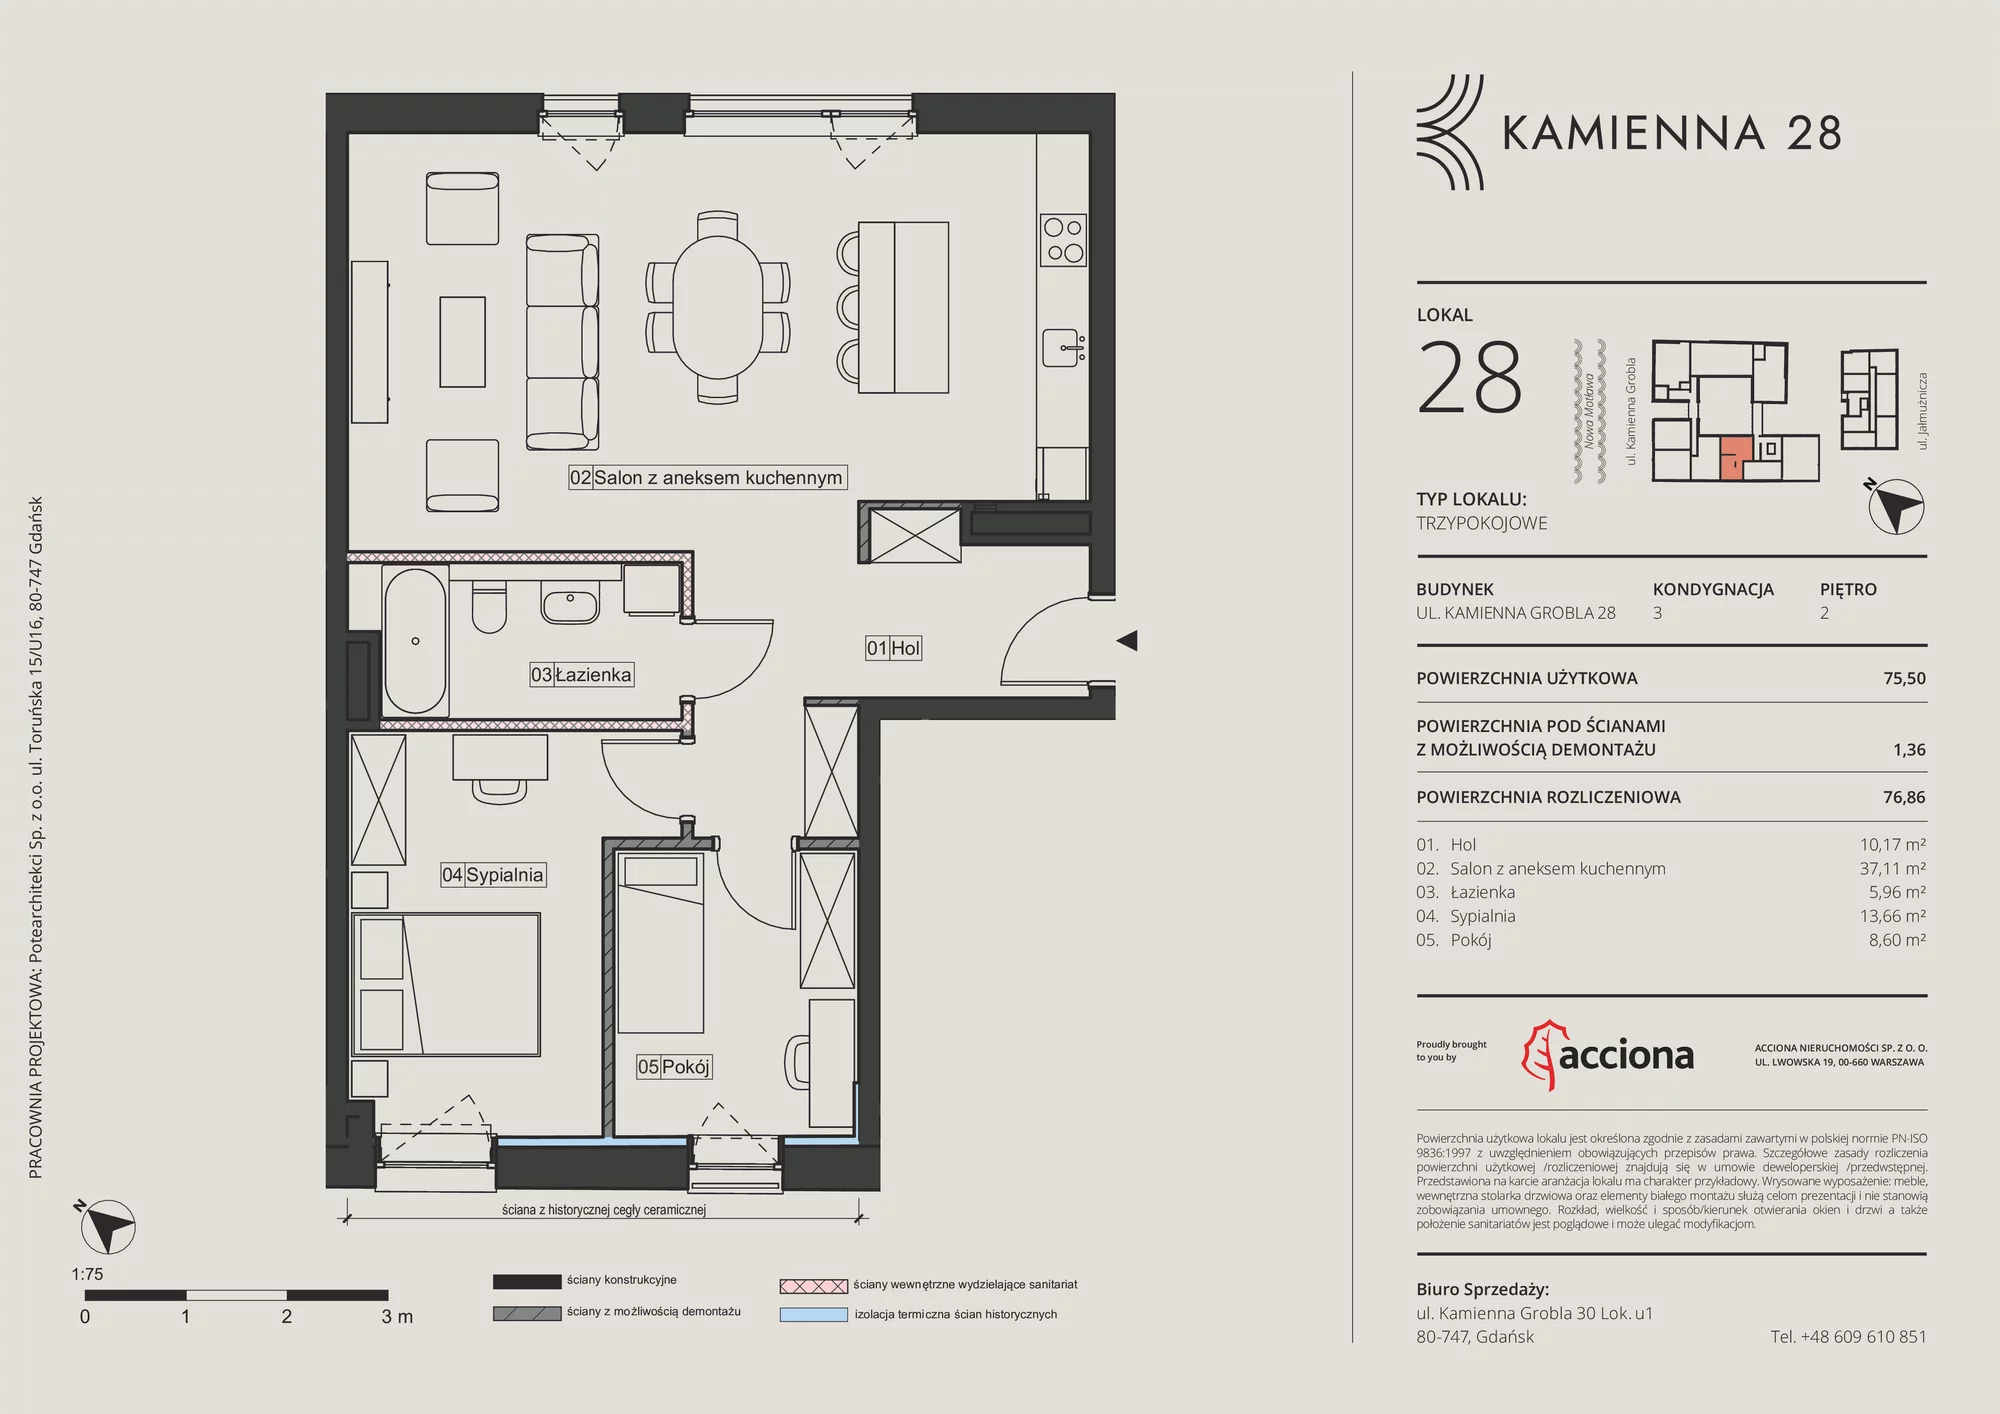 Apartament 76,86 m², piętro 2, oferta nr 28.28, Kamienna 28, Gdańsk, Śródmieście, Dolne Miasto, ul. Kamienna Grobla 28/29